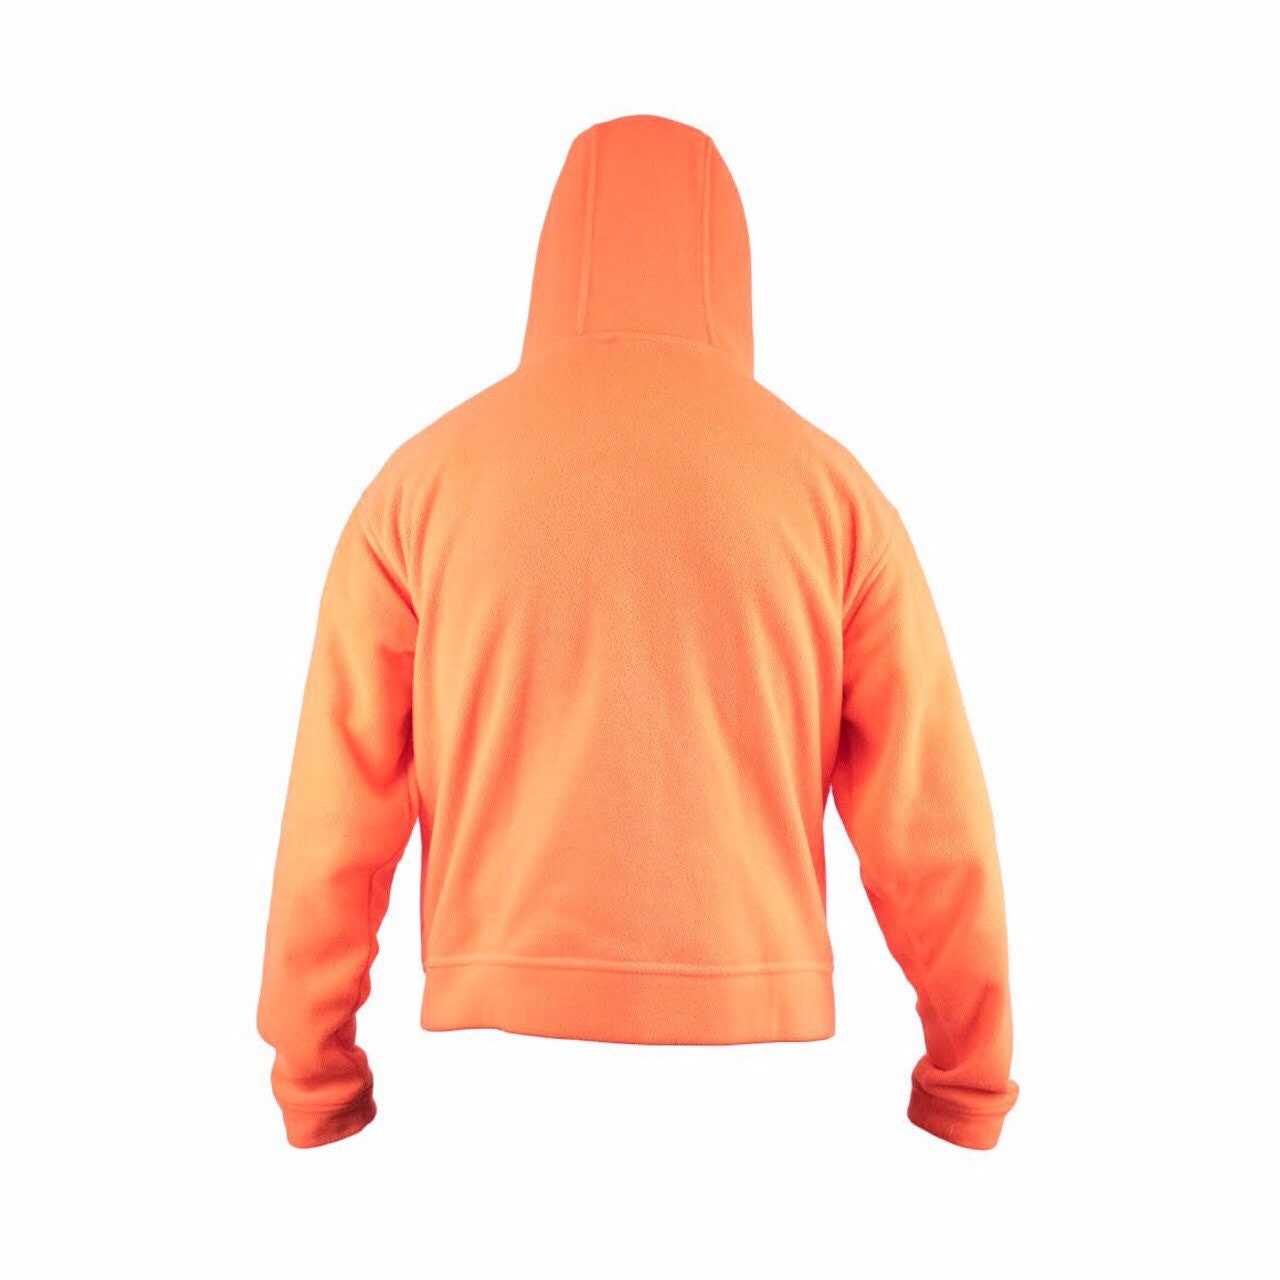 Vintage Neon Orange Zip Up Fleece | Etsy